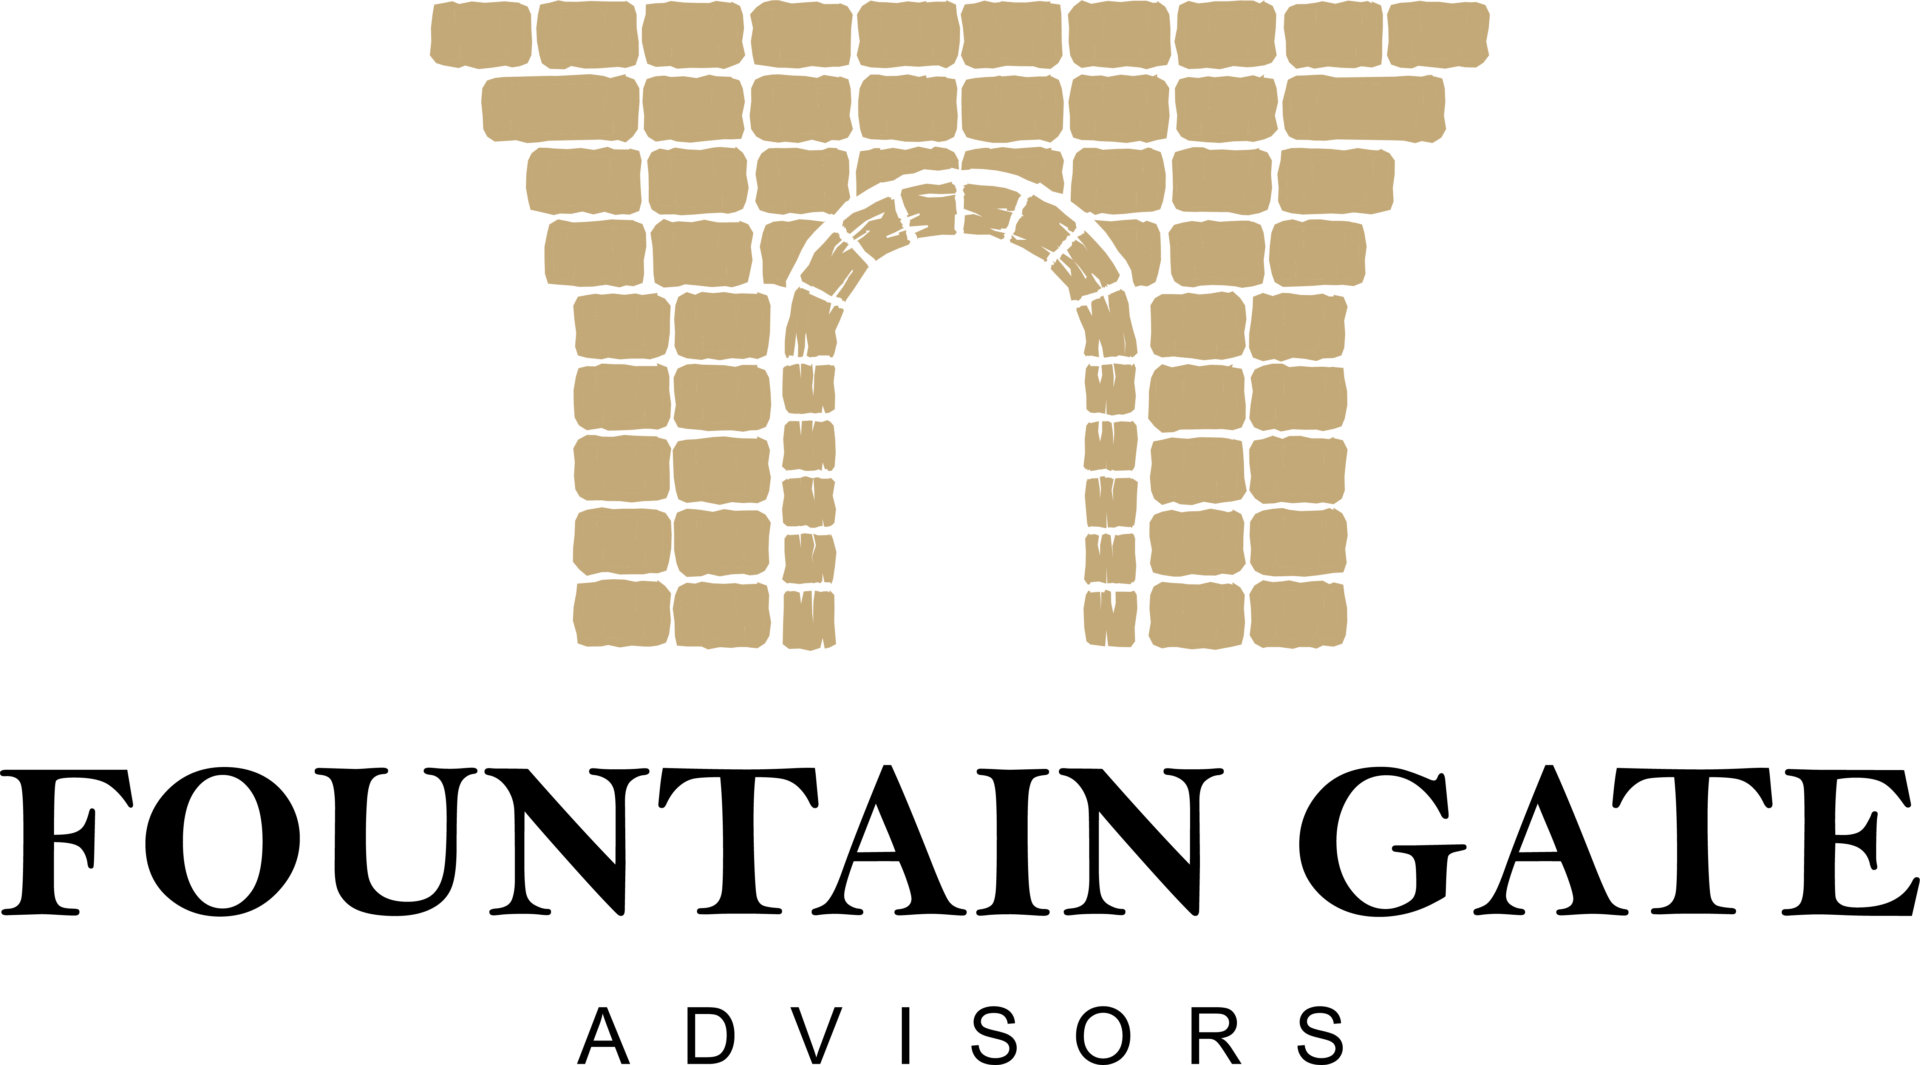 FOUNTAIN GATE